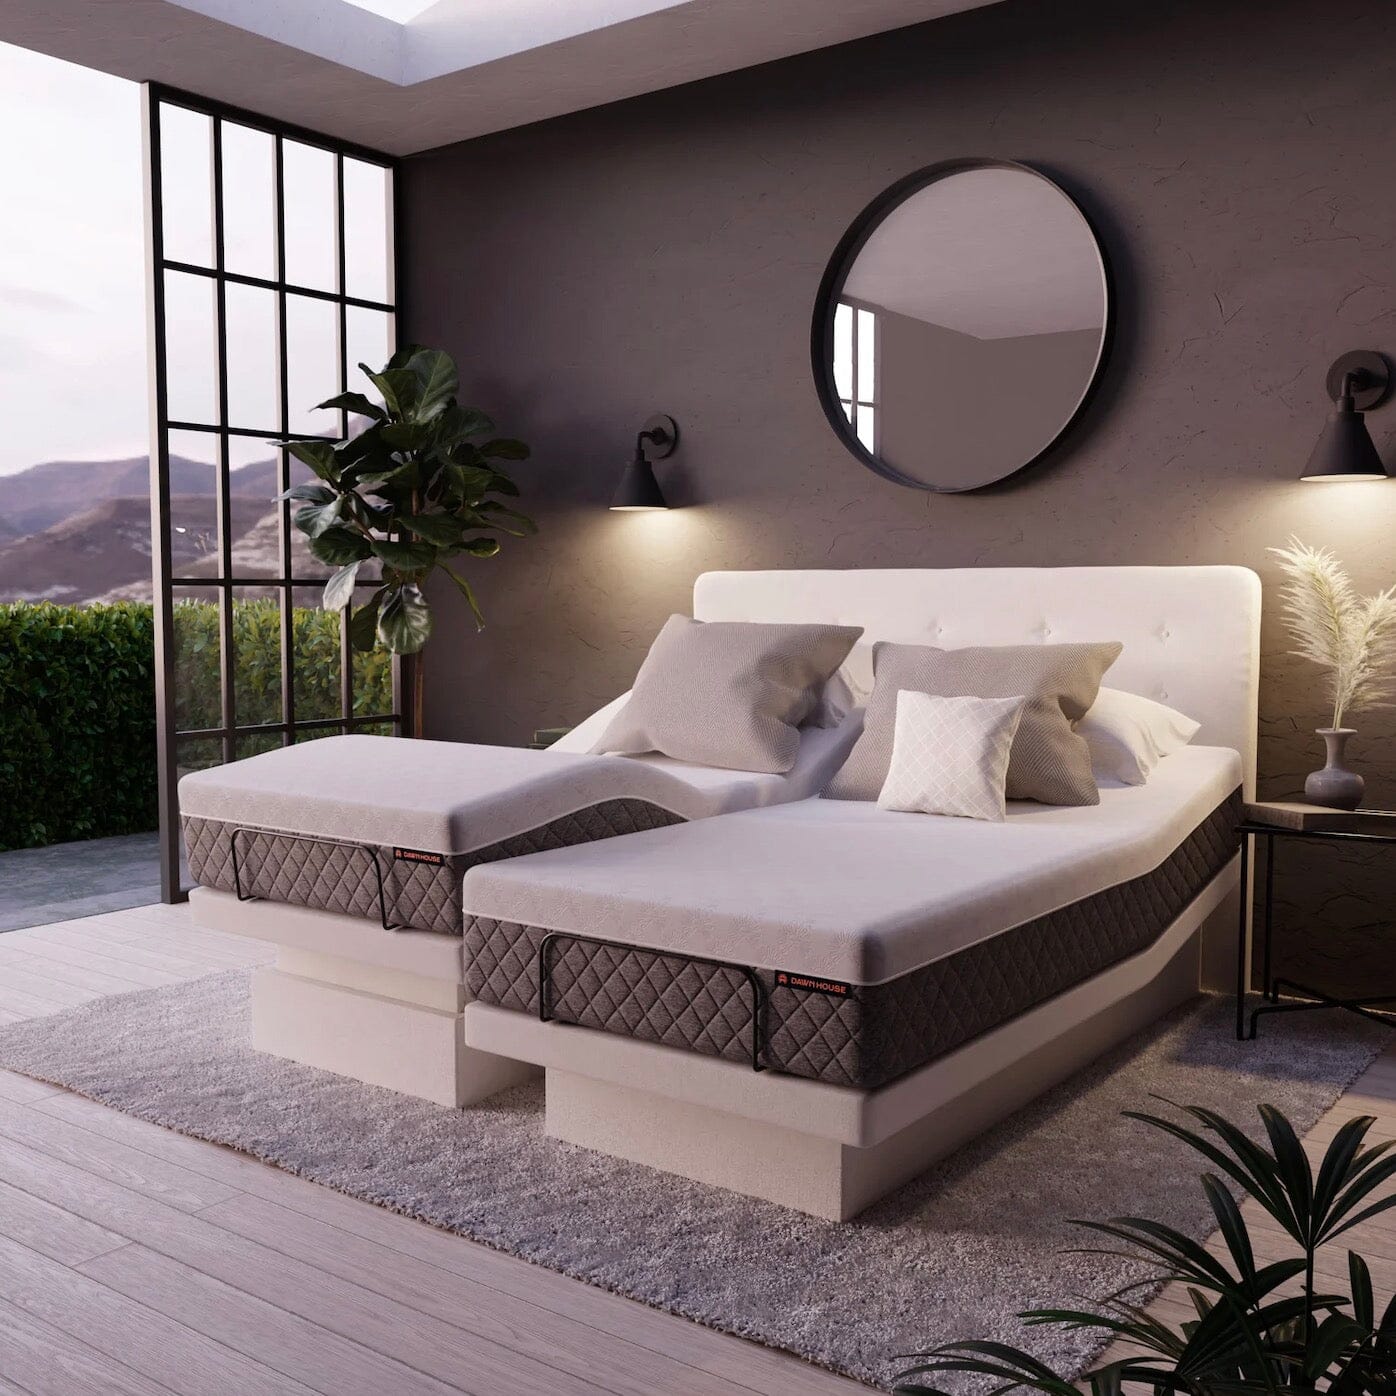 Dawn House Adjustable Hi-Low Smart Bed – Express Hospital Beds